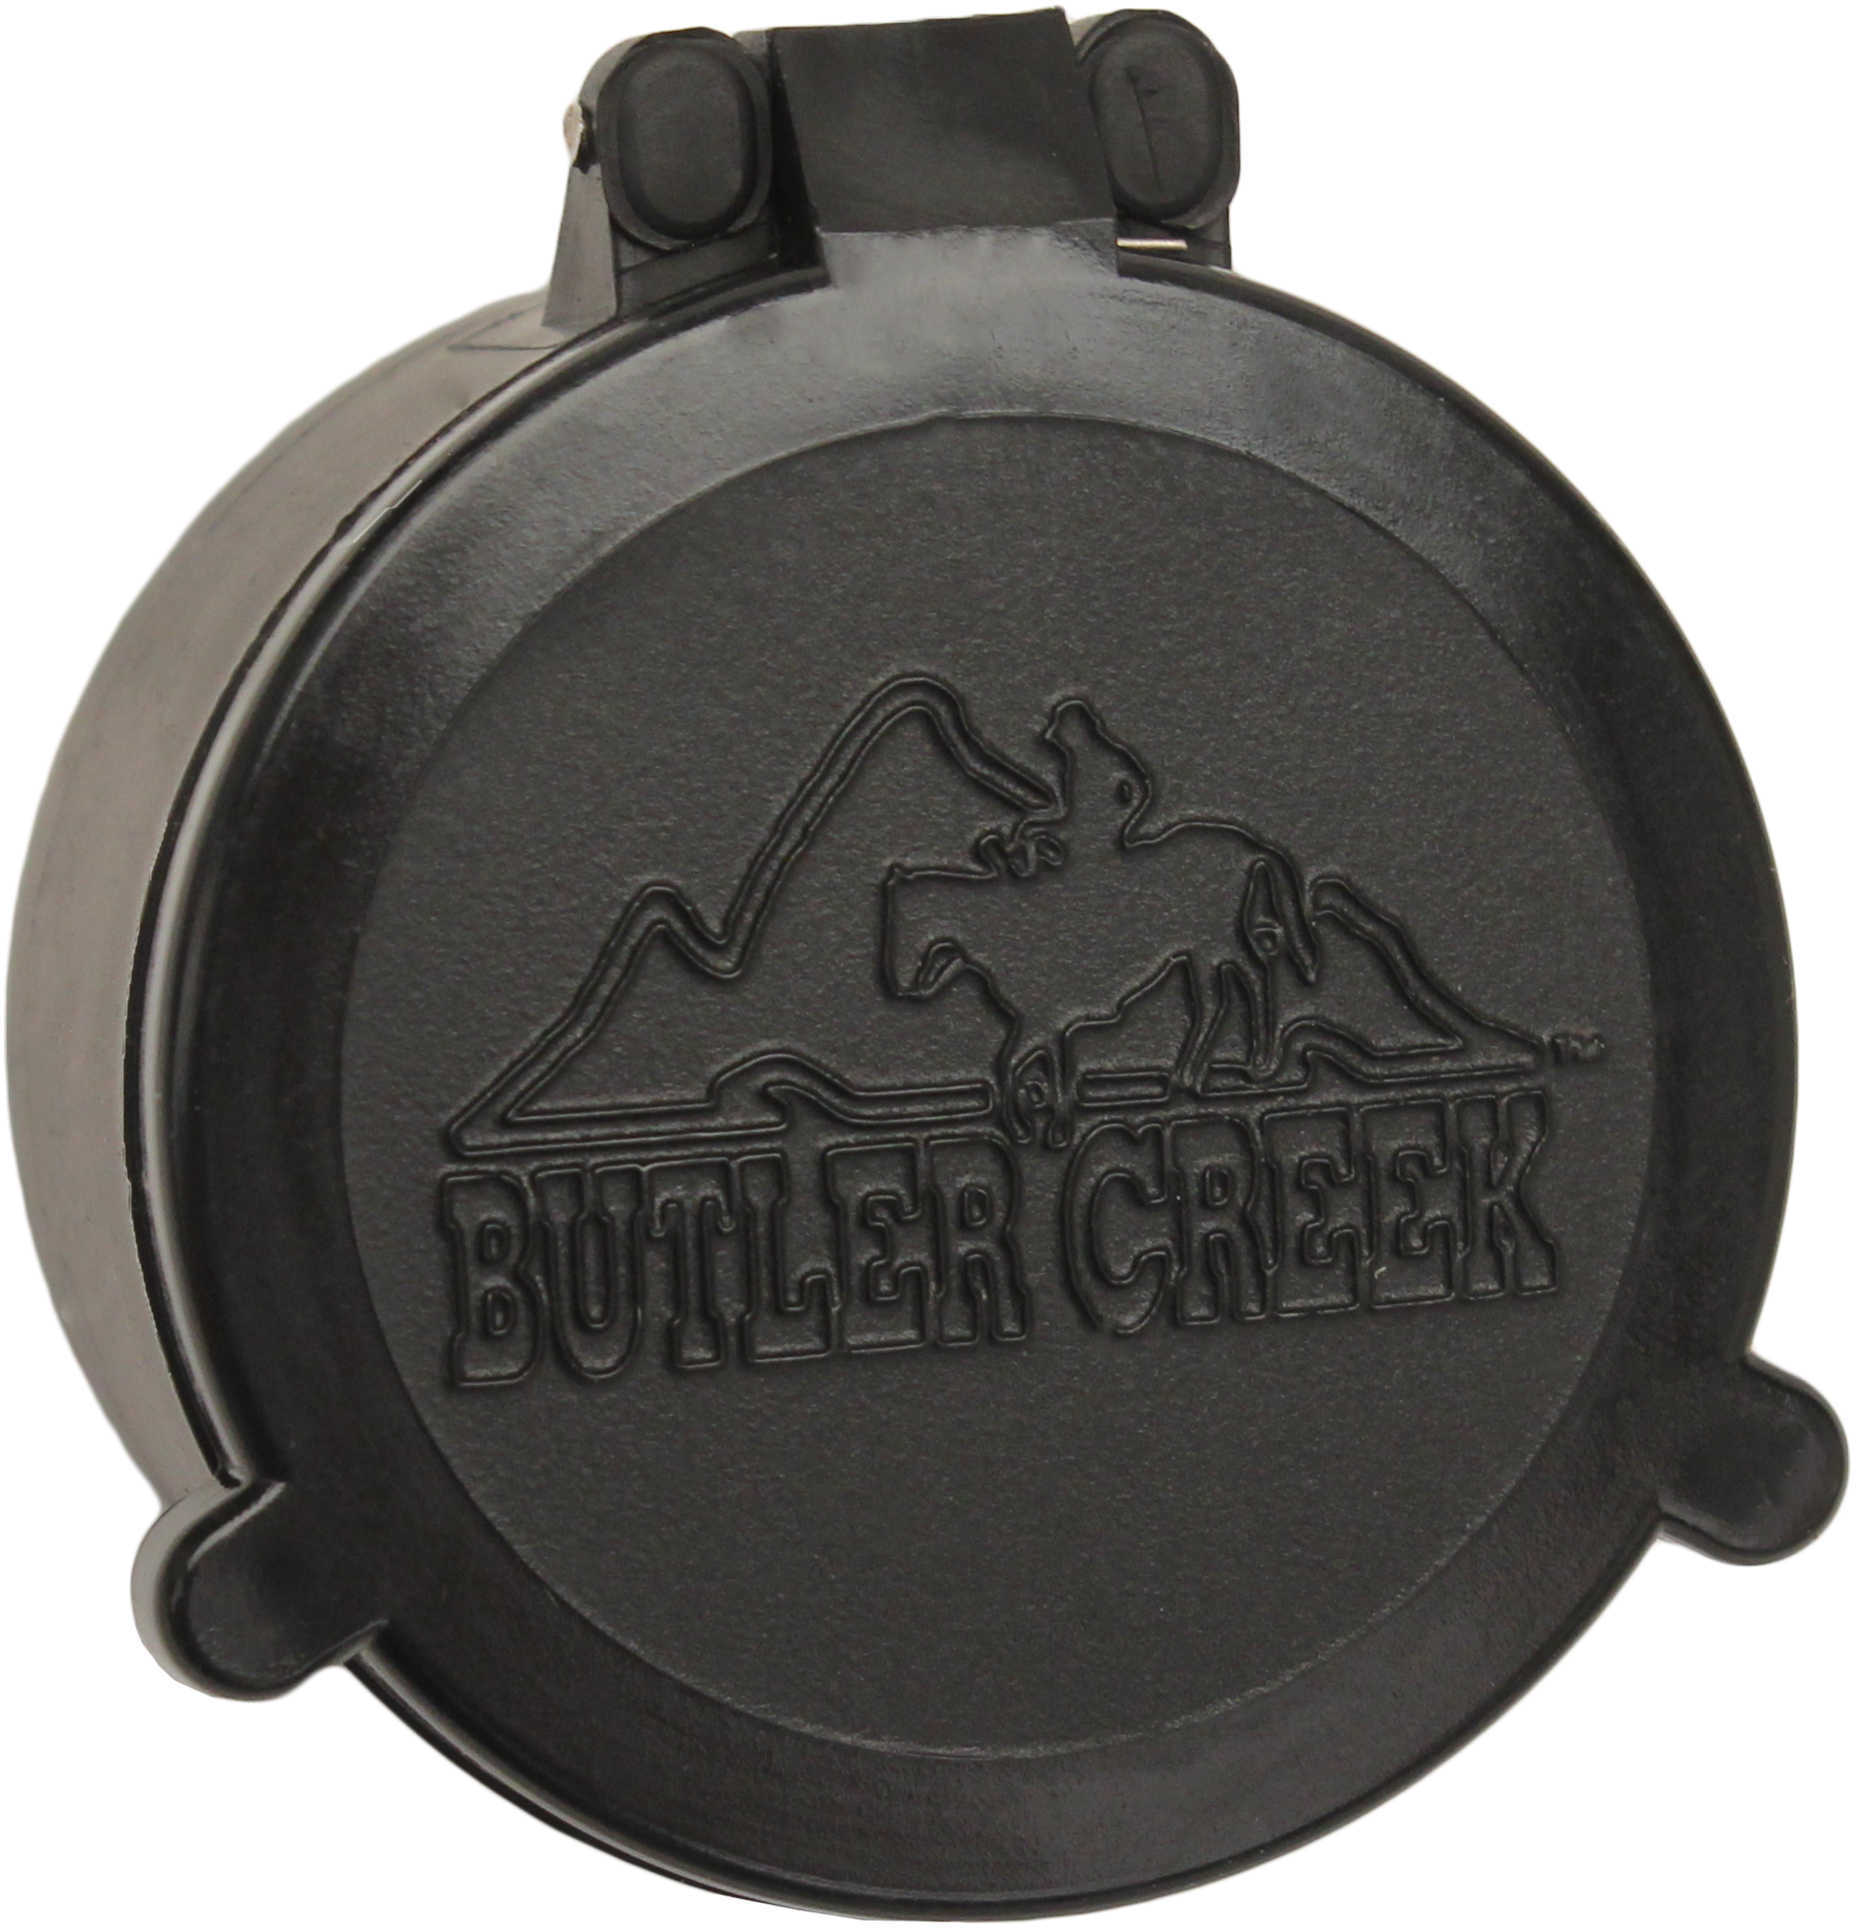 Butler Creek 30260 Flip-Open Scope Cover Objective Lens 46.20mm Slip On Polymer Black